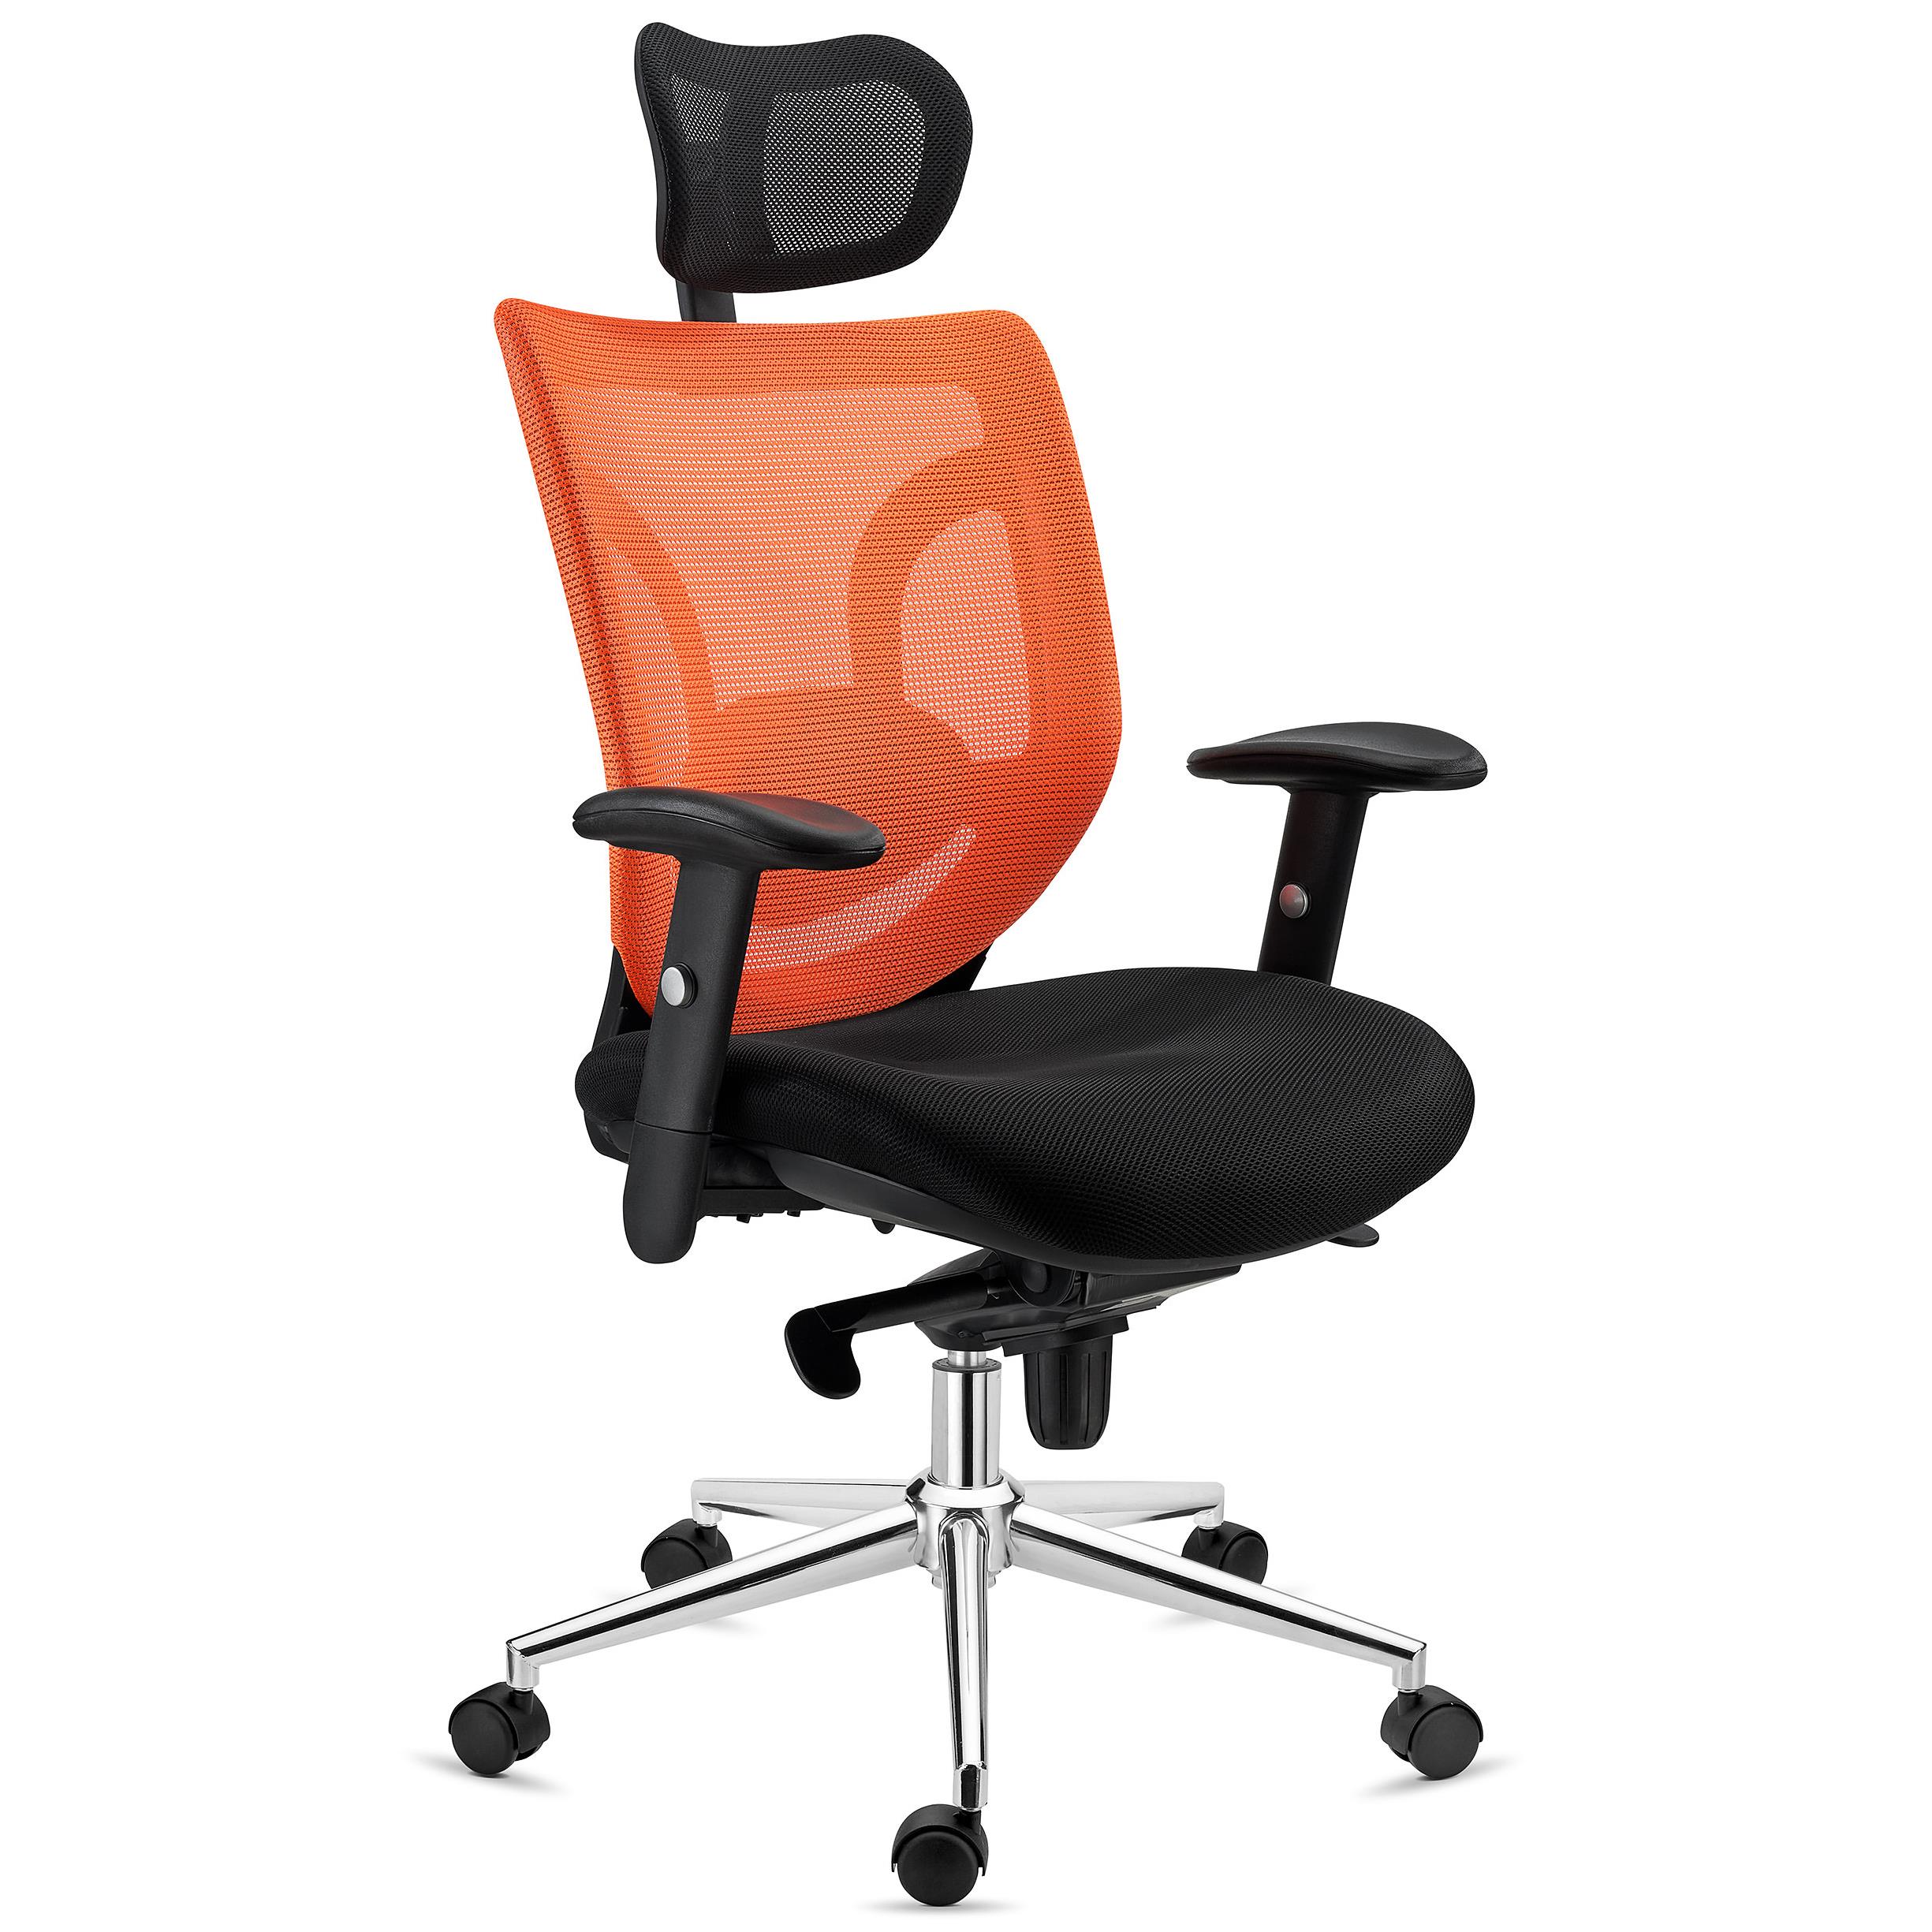 Ergonomischer Bürostuhl LAMBO, 8h-Nutzung , Kopfstütze, unglaubliche Lendenwirbelstütze, Farbe Orange